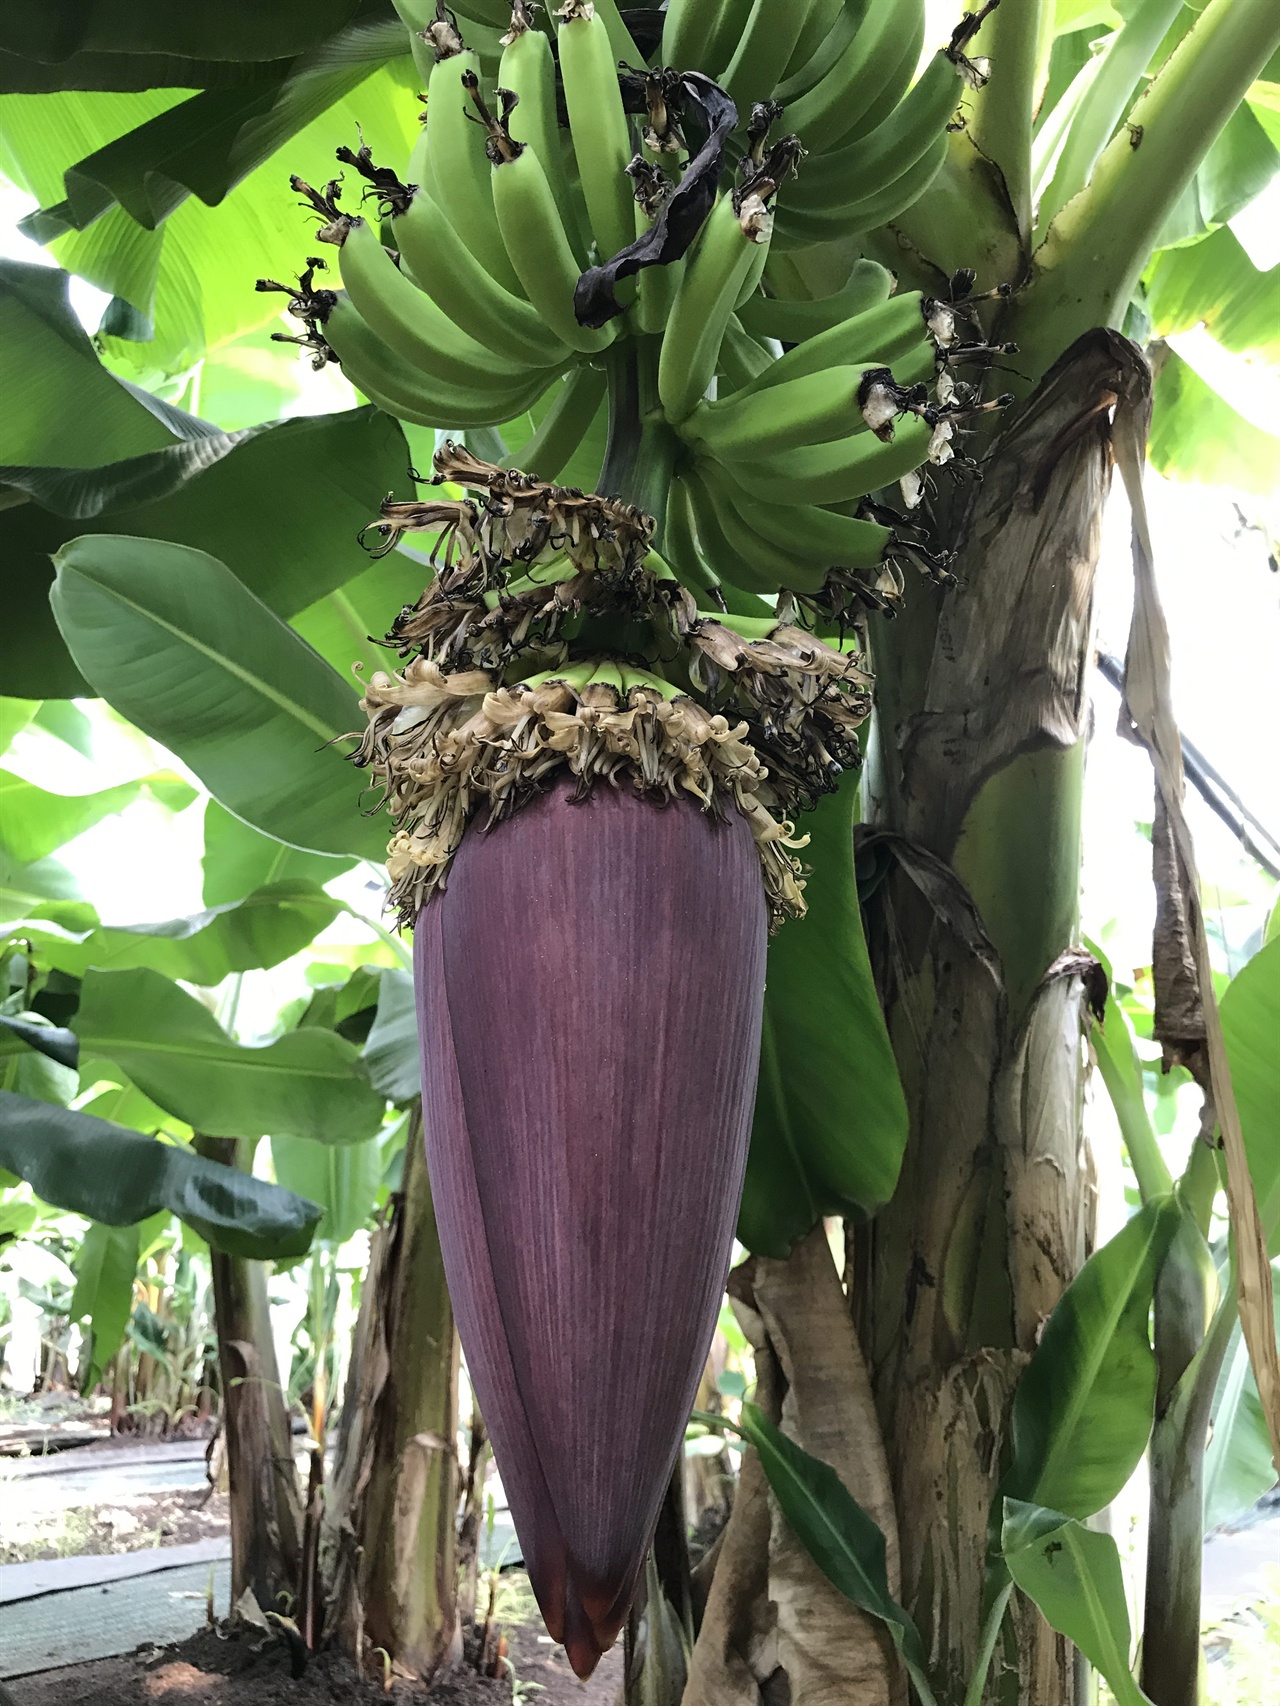 제주에는 다양한 열대과일이 생산되고 있다. 최근에 바나나 농가들도 꽤 늘어나고 있다. 